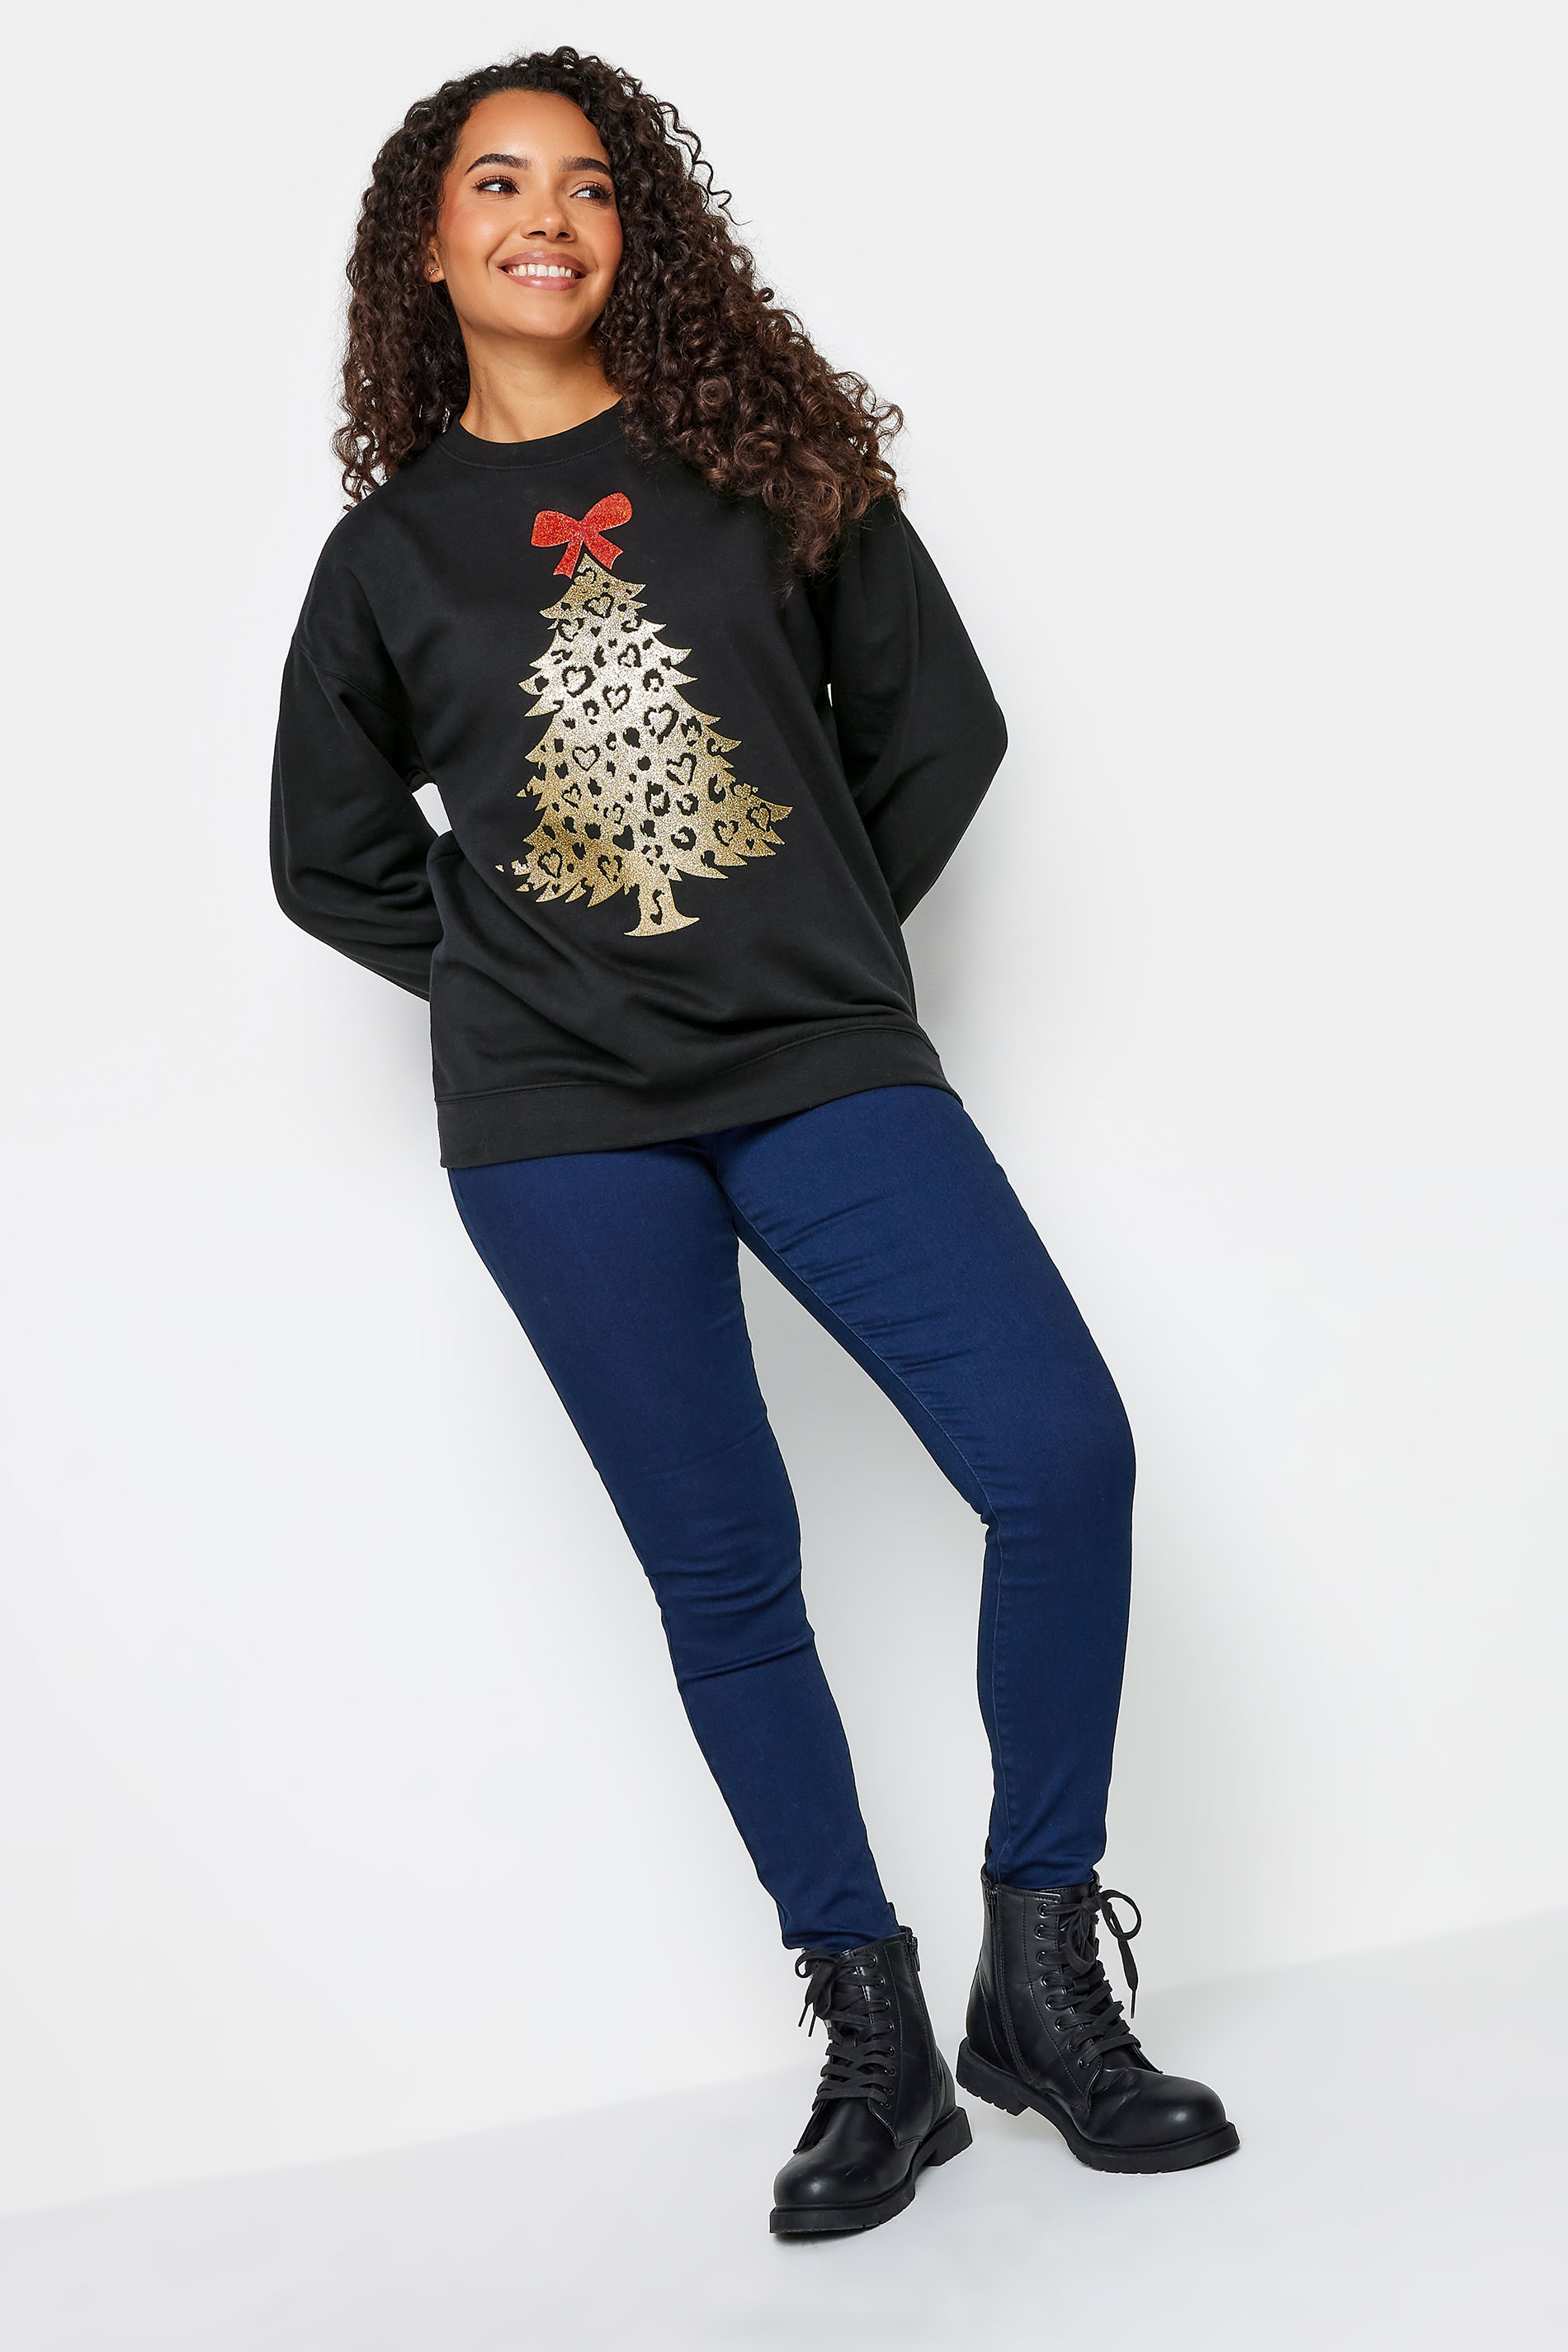 M&Co Black & Gold Christmas Tree Sweatshirt | M&Co 2